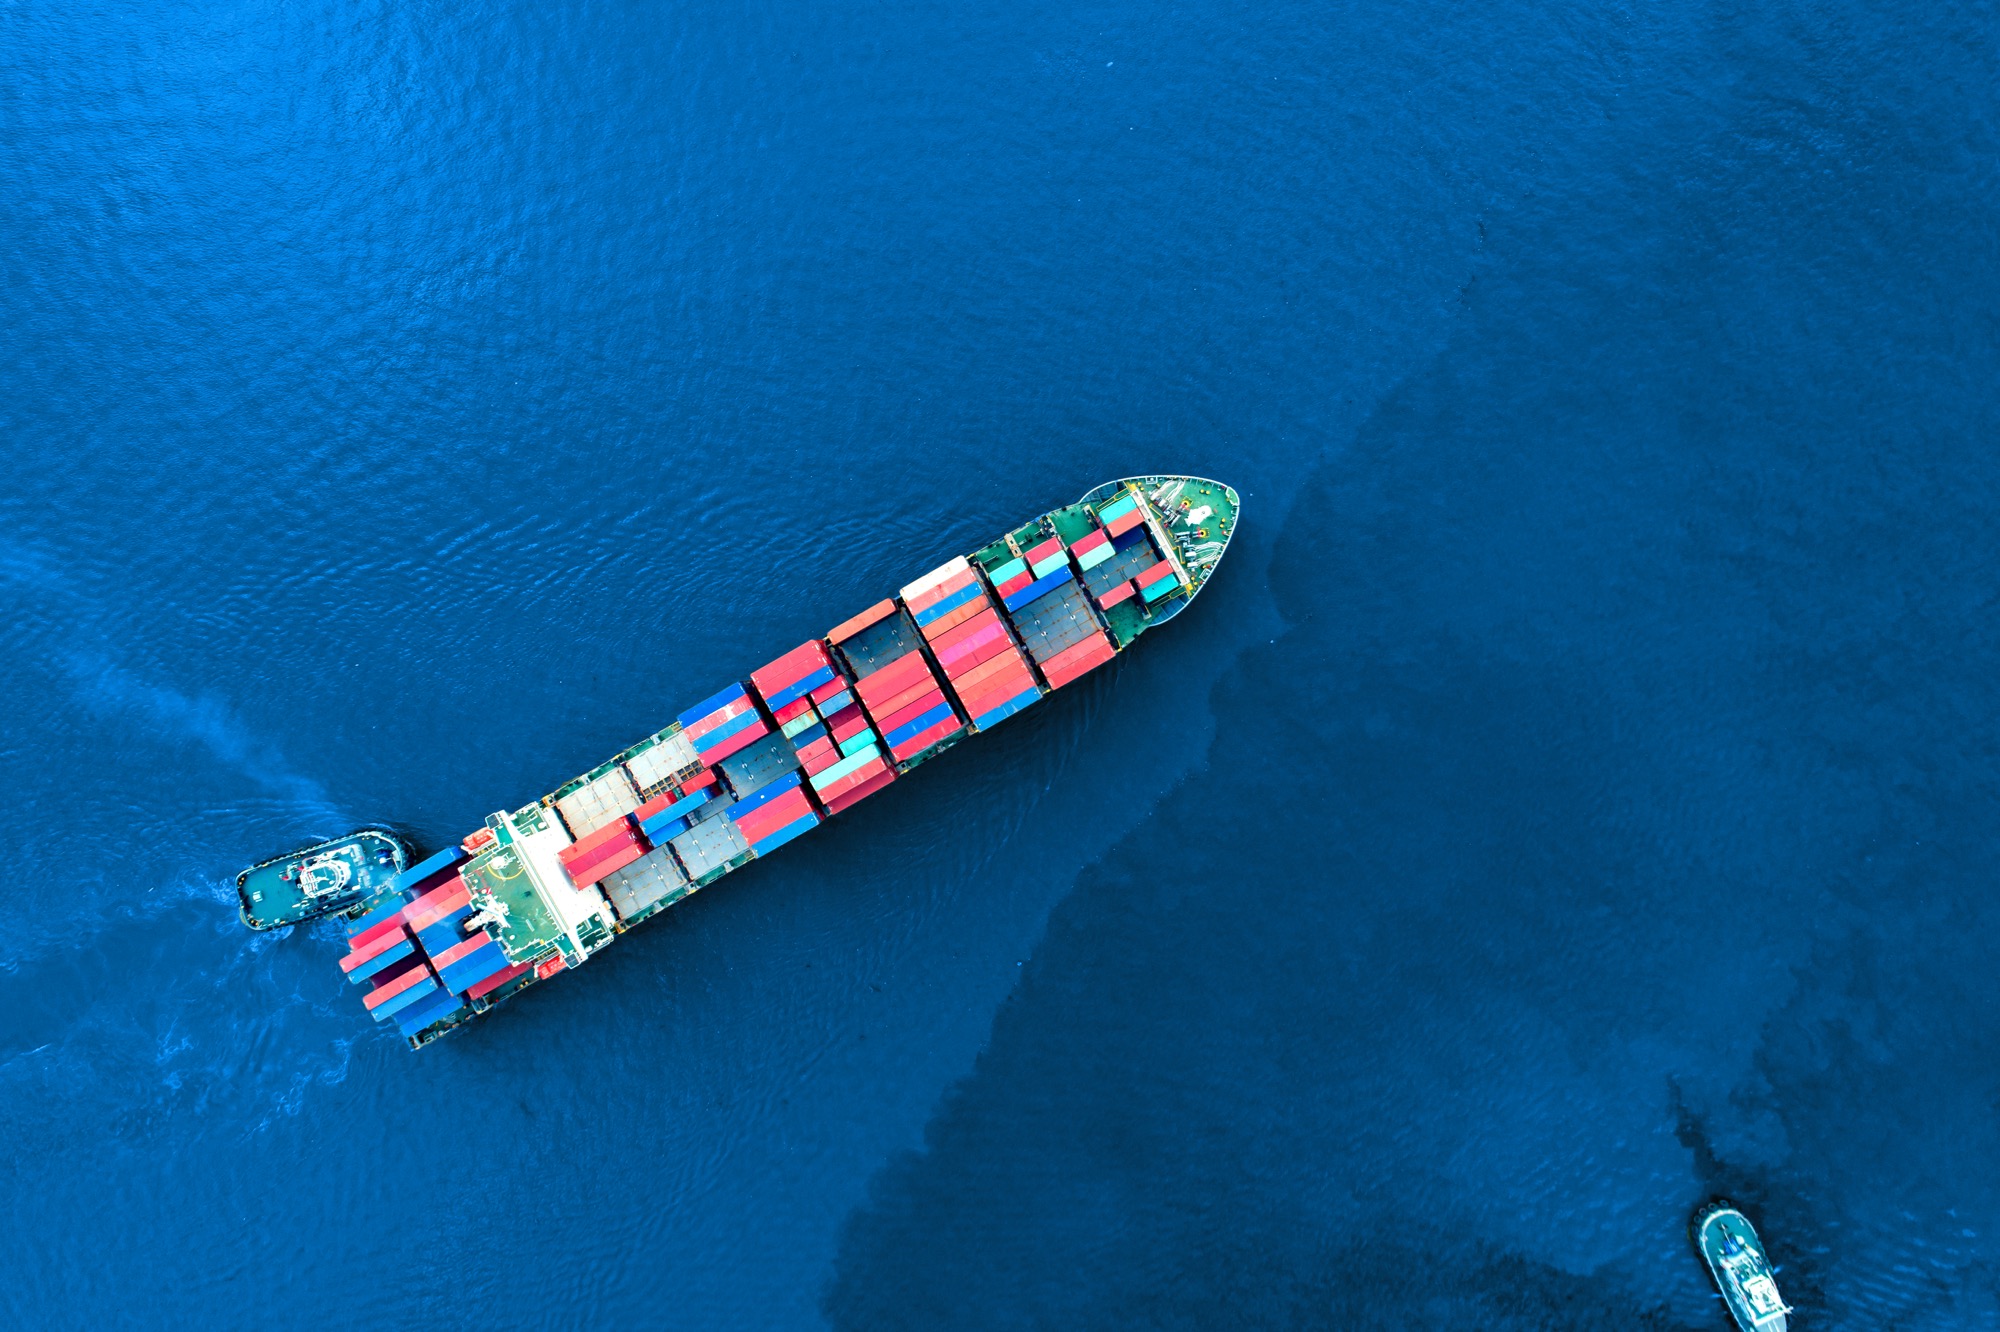 Seguridad de los buques mercantes para los viajes de carga en Europa